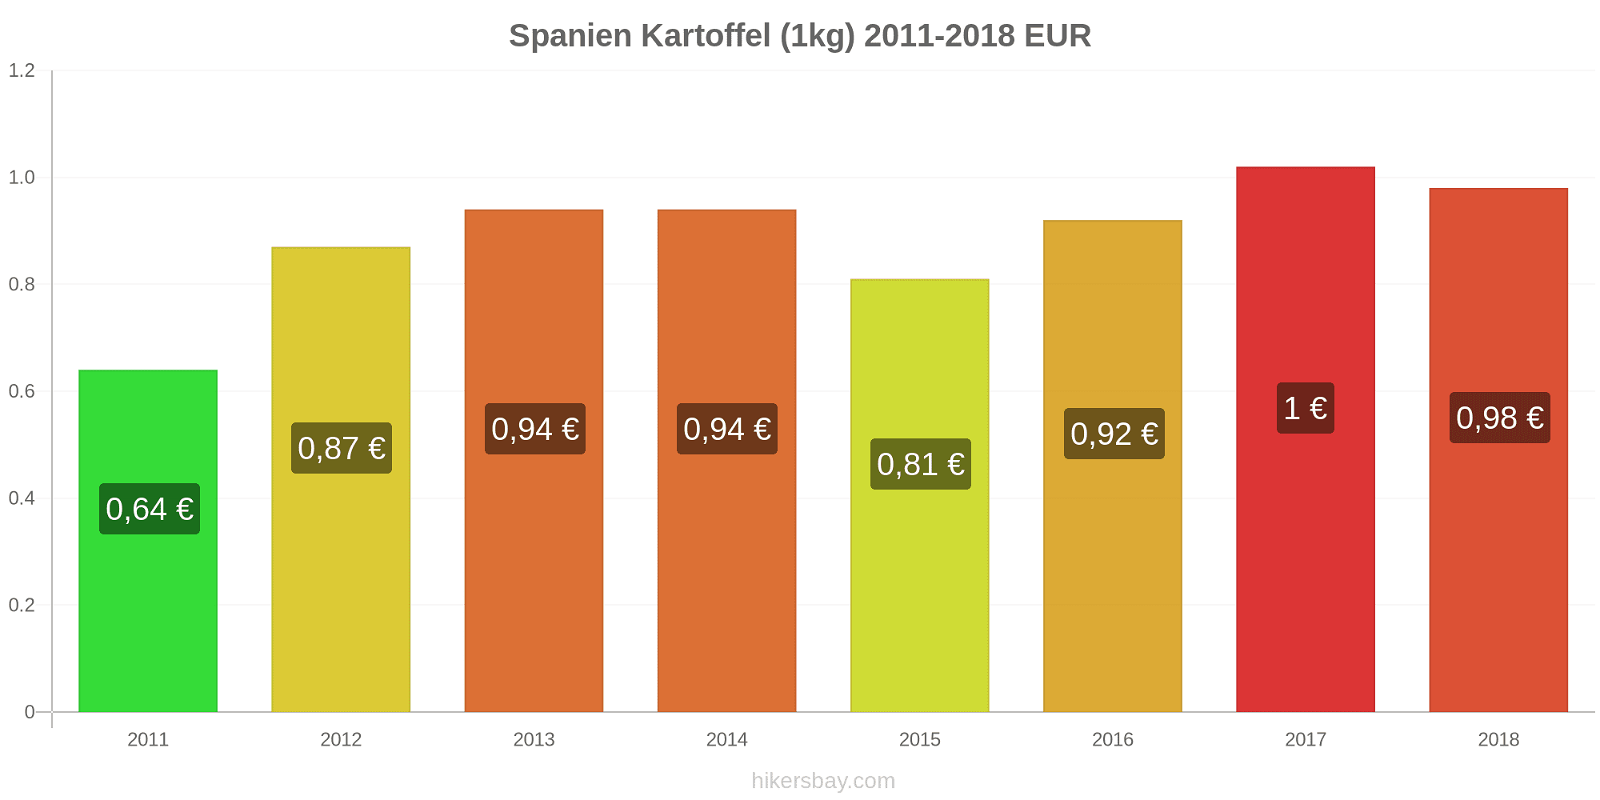 Spanien Preisänderungen Kartoffeln (1kg) hikersbay.com